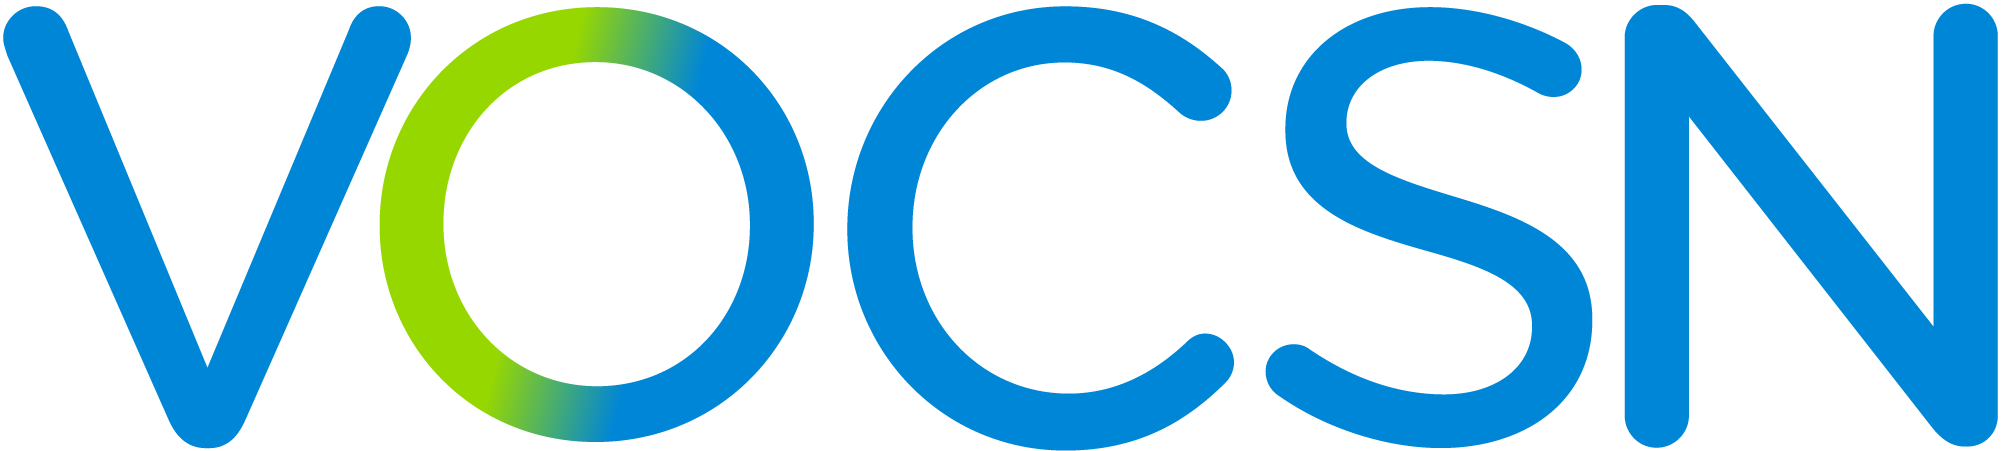 VOCSN logo